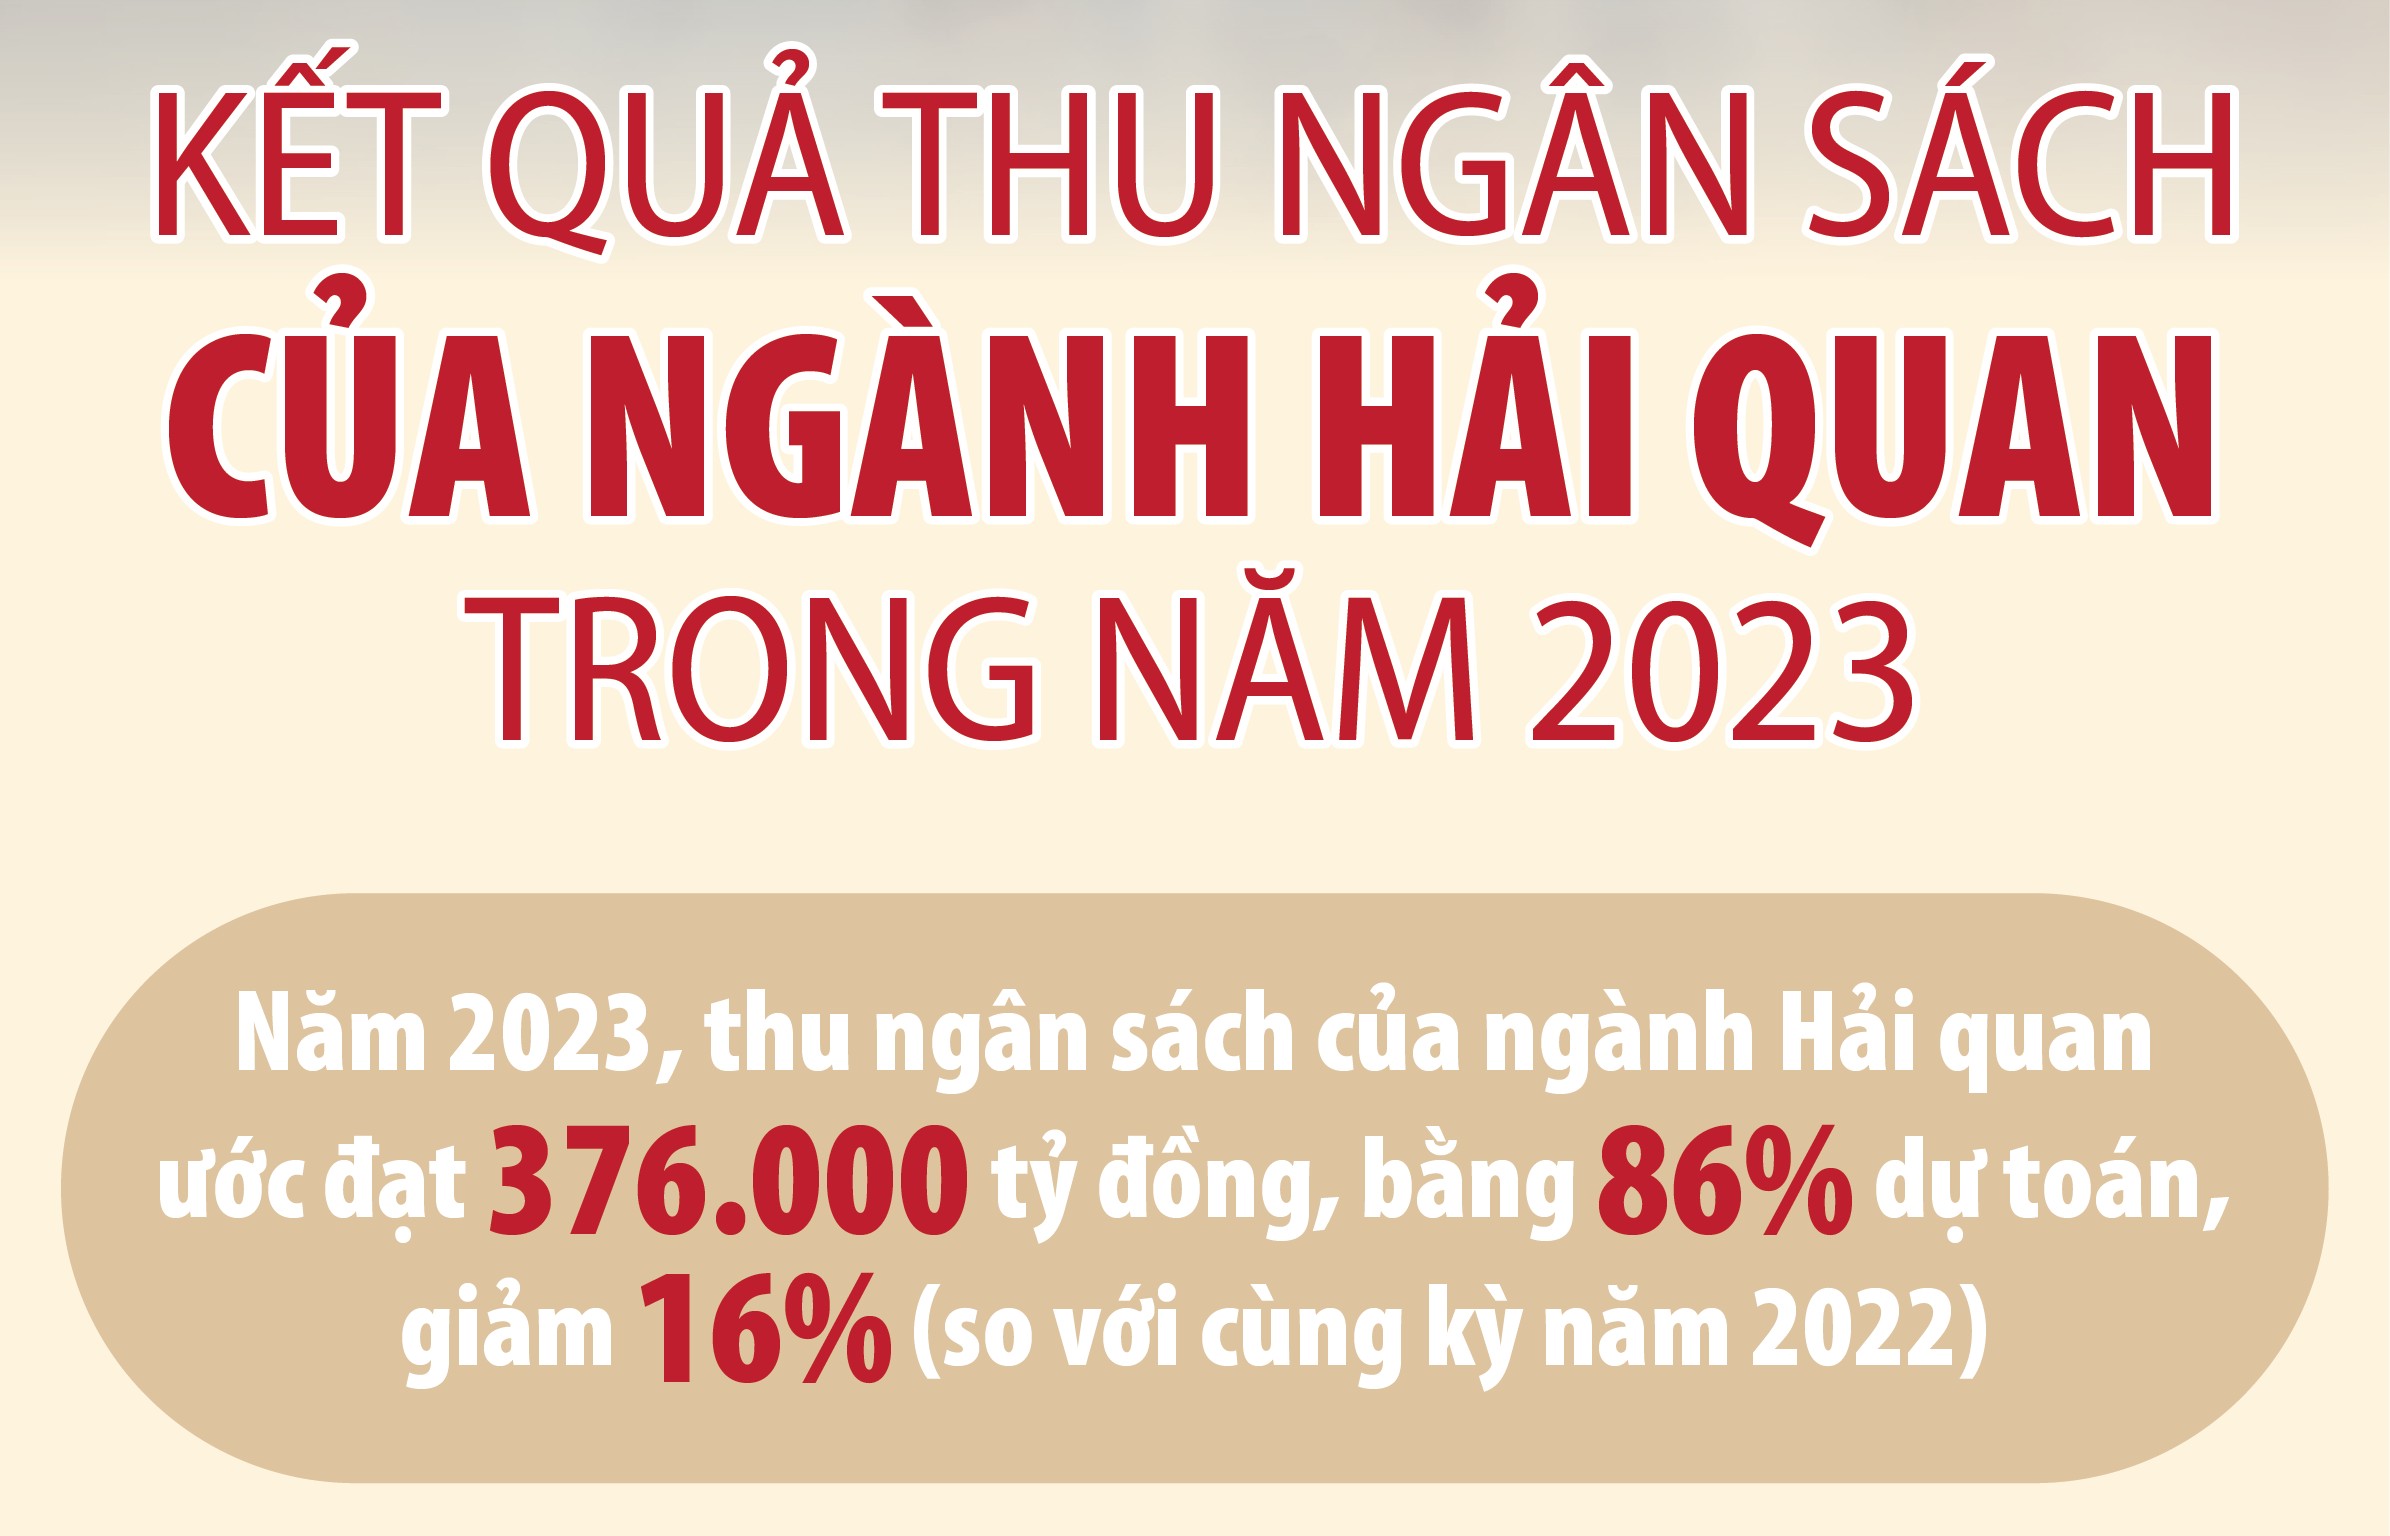 Năm 2023, ngành Hải quan thu ngân sách ước đạt 376.000 tỷ đồng